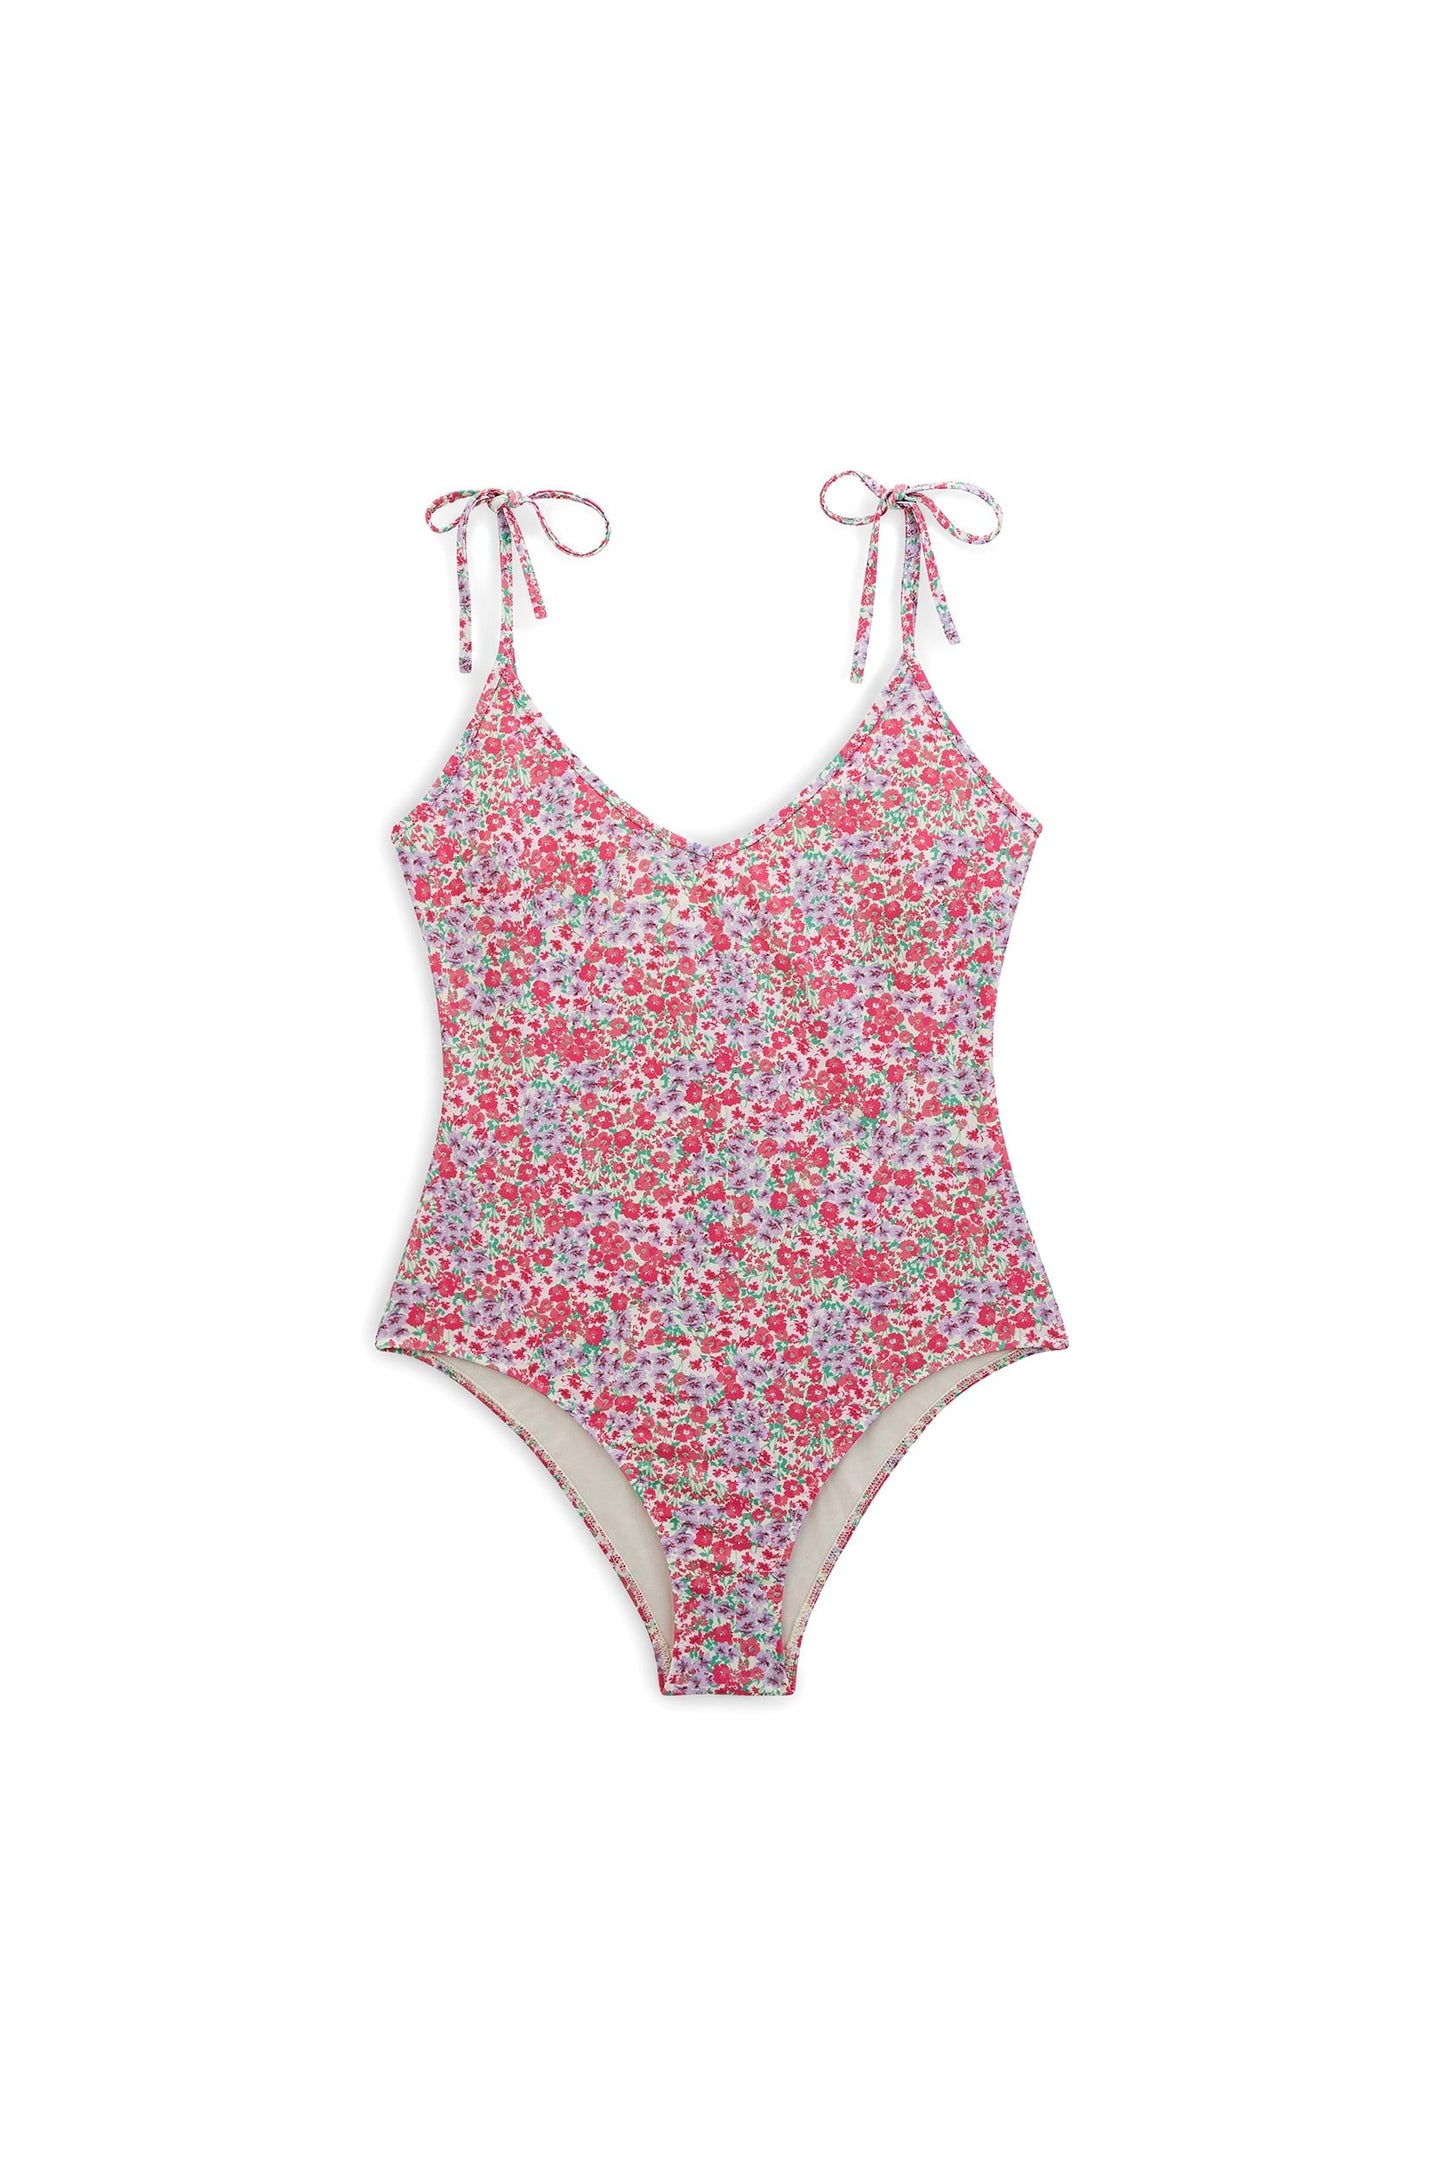 Tilleul floral print swimsuit